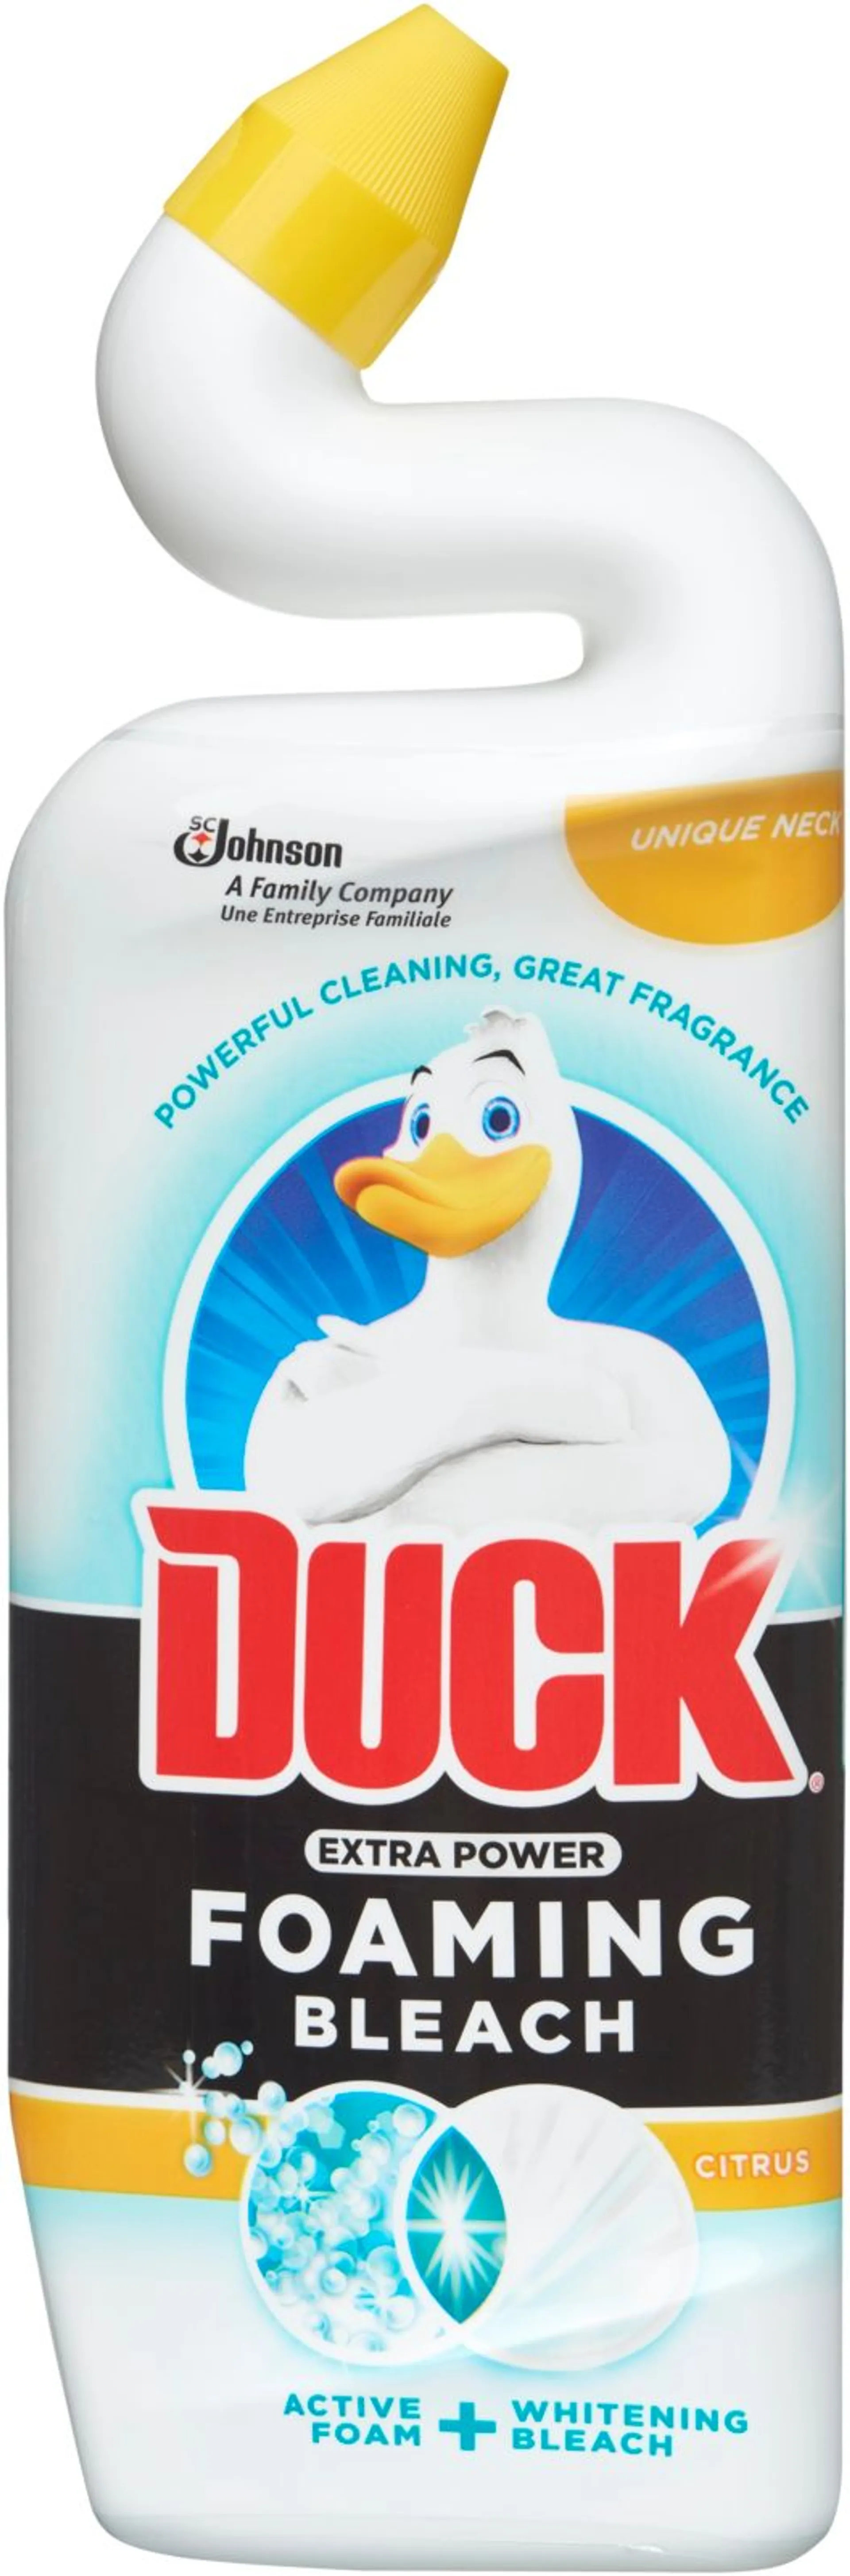 Duck 750ml Citrus vaahtoava & valkaiseva puhdistusaine